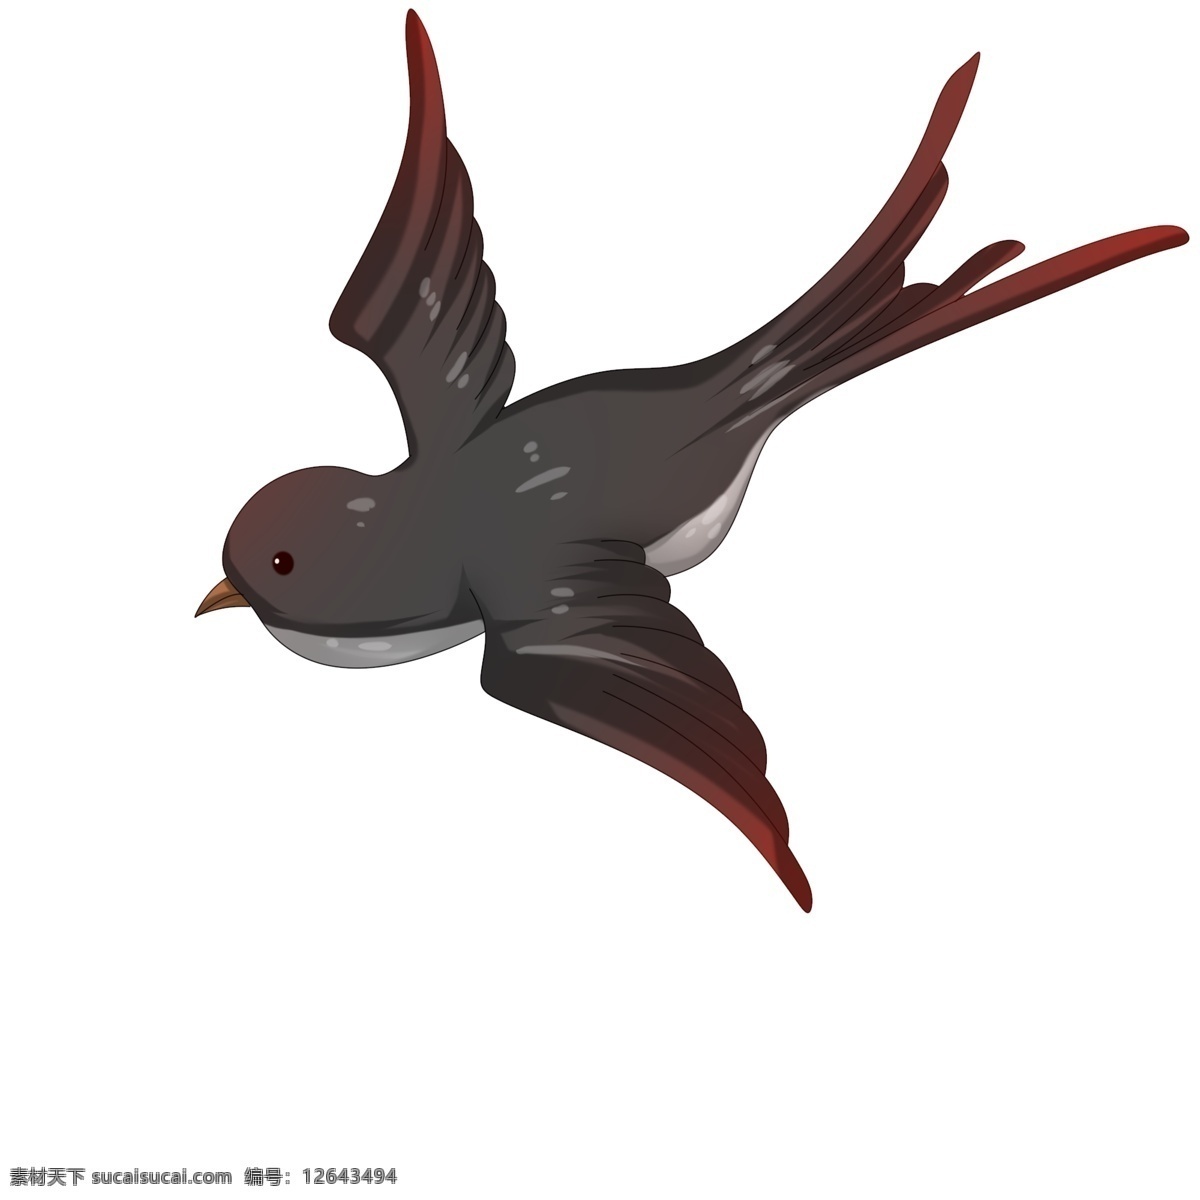 漂亮 燕子 手绘 插画 飞舞的燕子 可爱的燕子 手绘燕子 卡通燕子 漂亮的燕子 飞禽燕子 动物燕子